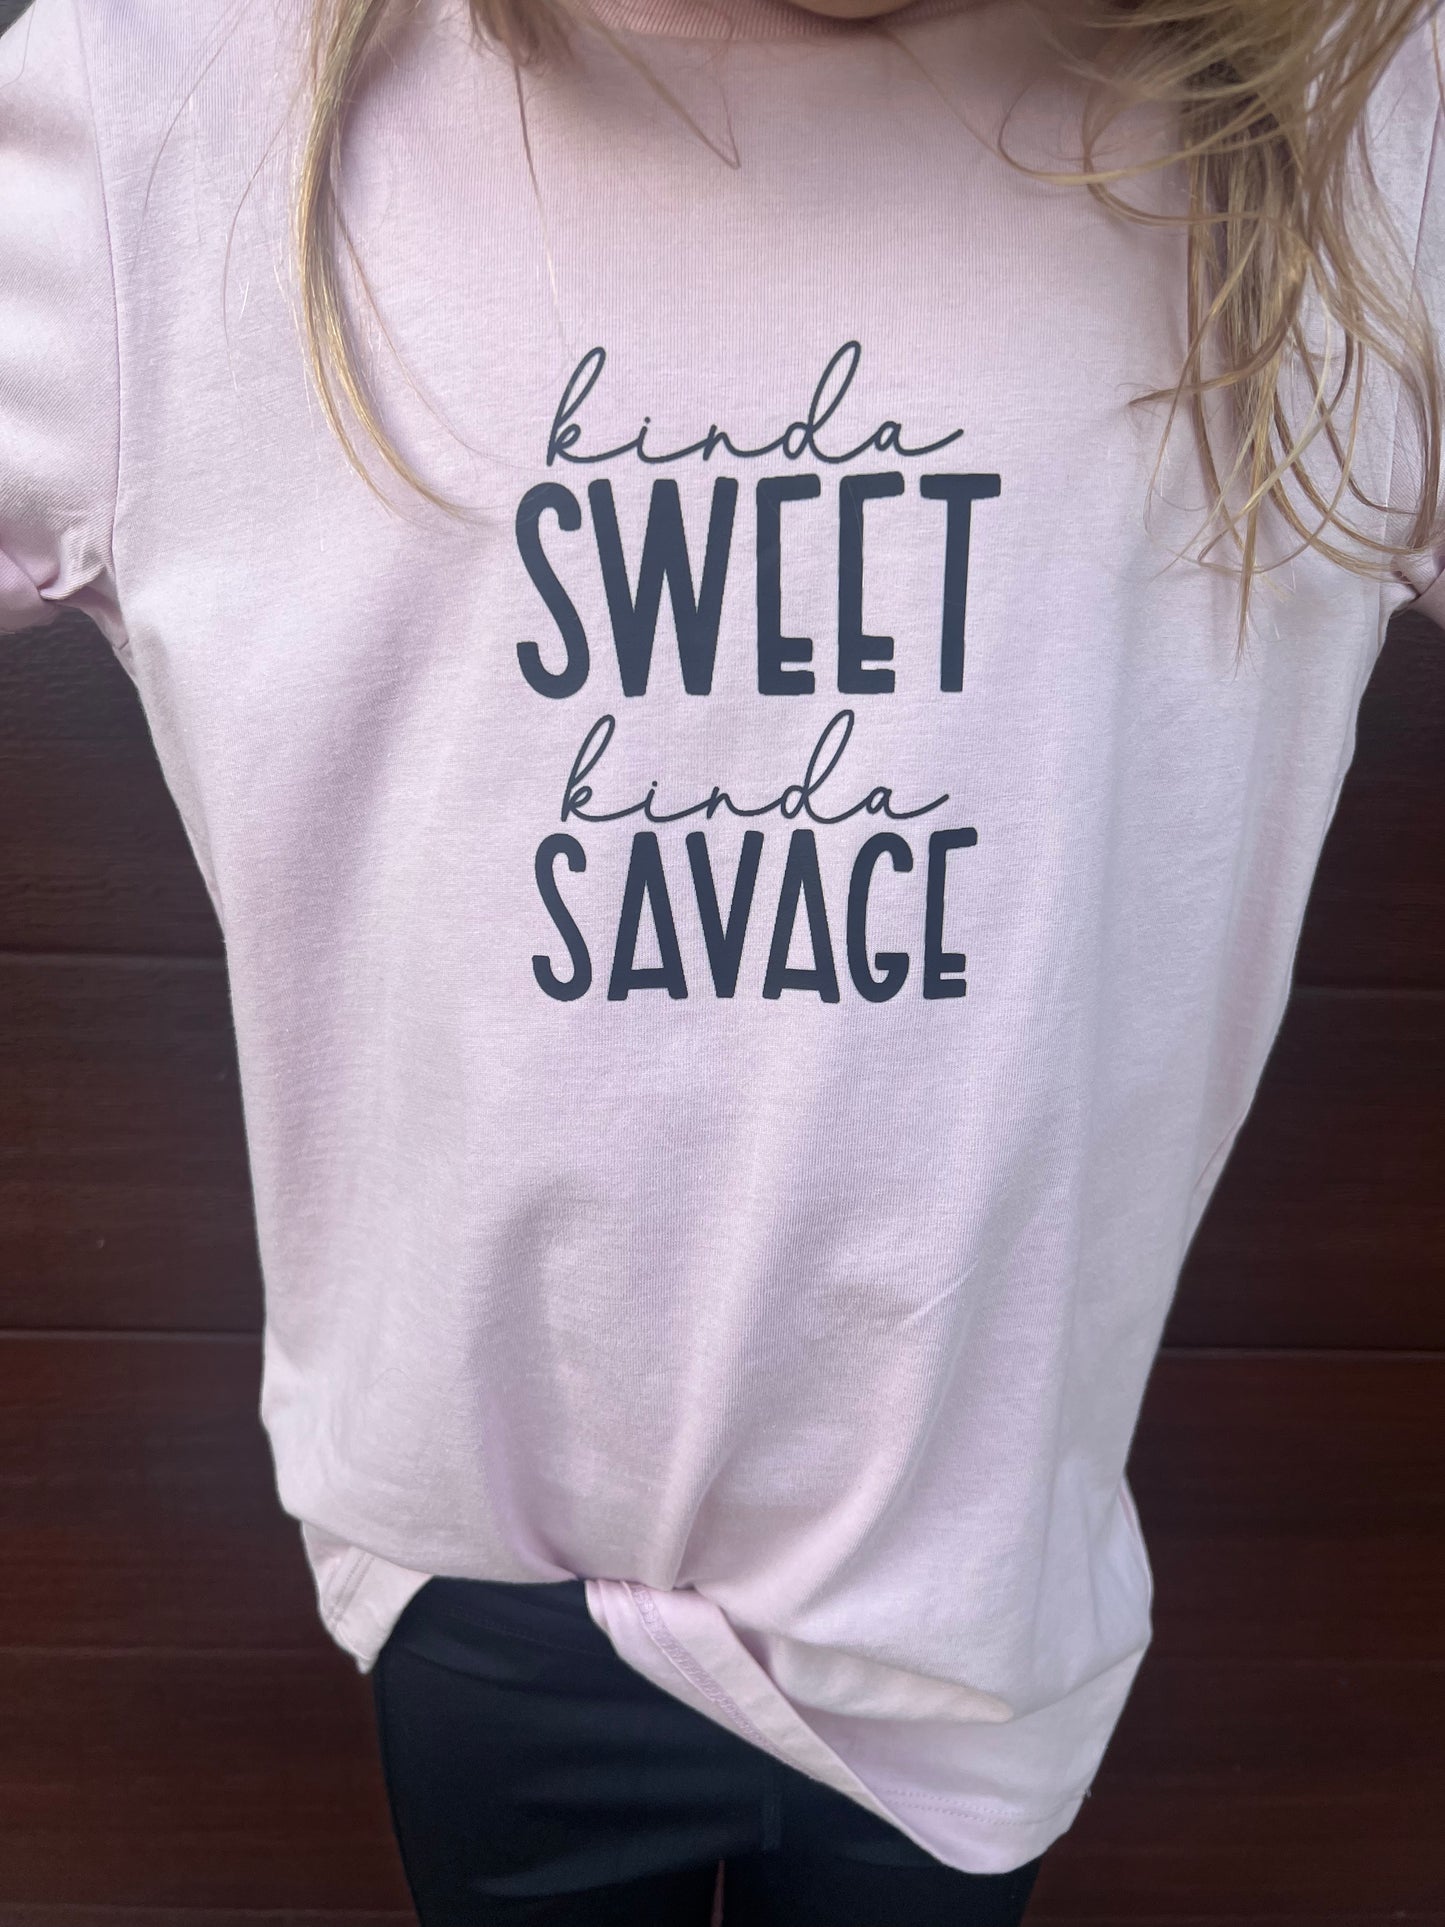 Kinda Sweet Kinda Savage Kids T-Shirt - Youth Size 8-14